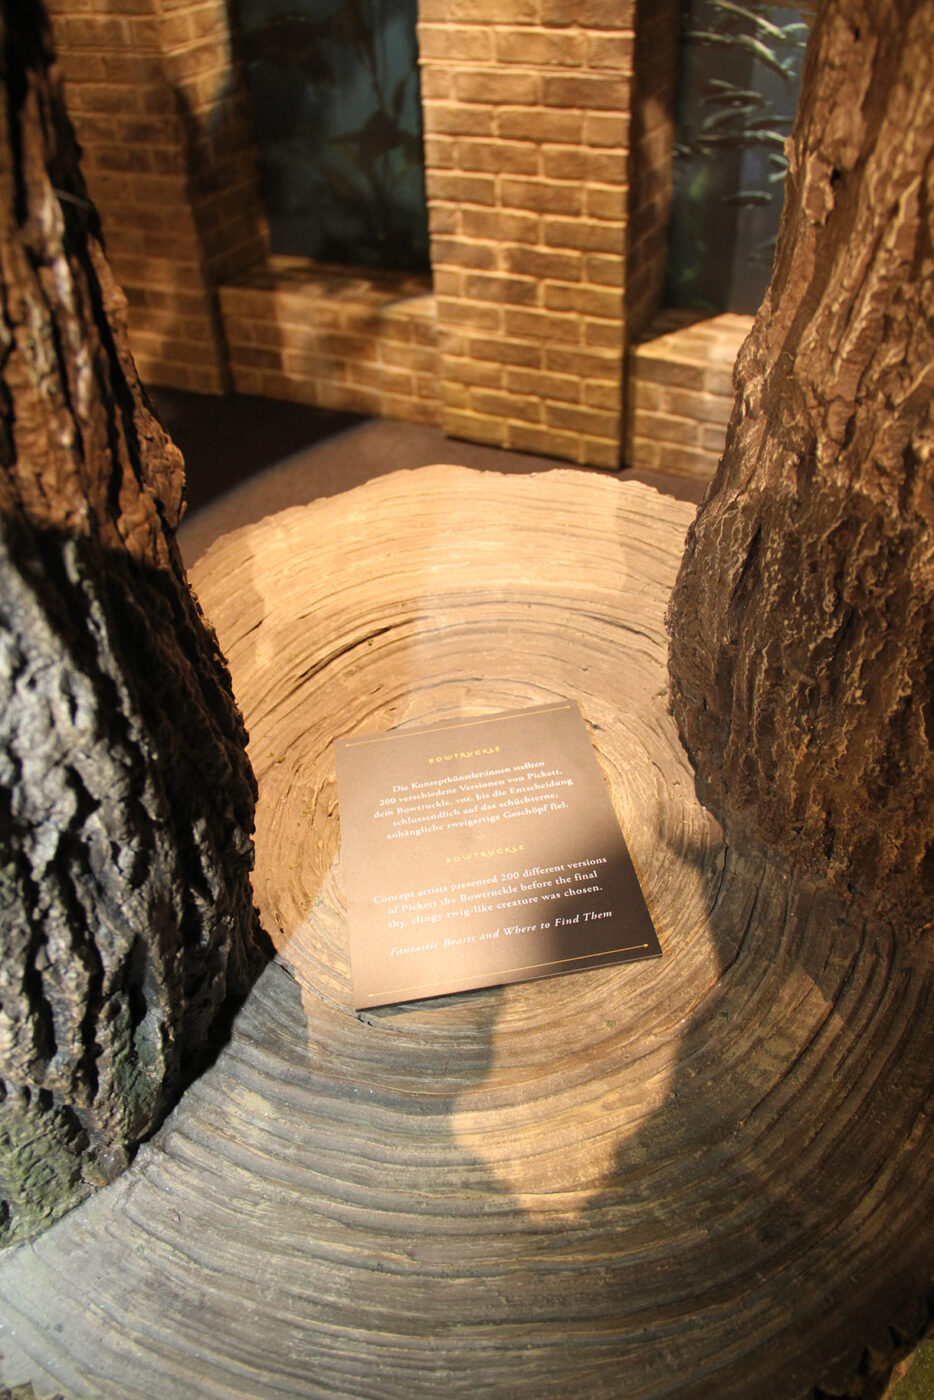 Detialansich eines der kunstvoll gefertigten Zauberwald-Bäume